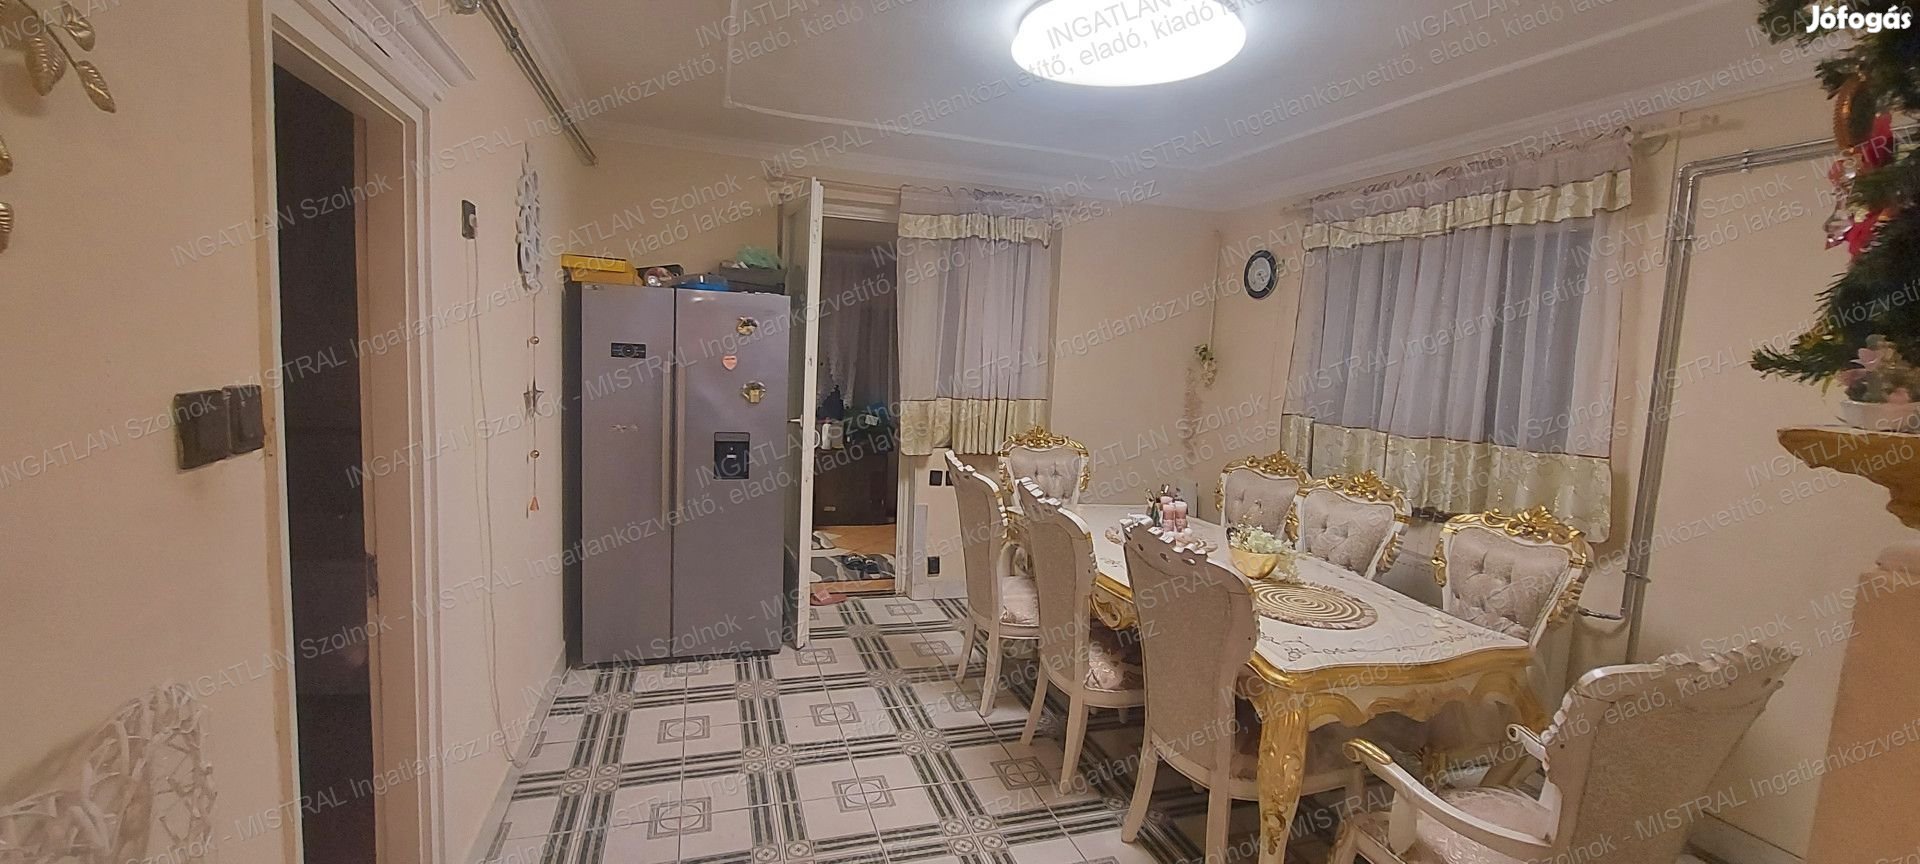 Szolnokon a Széchenyi lakótelepen eladó egy 135 m2-es 5 szobás